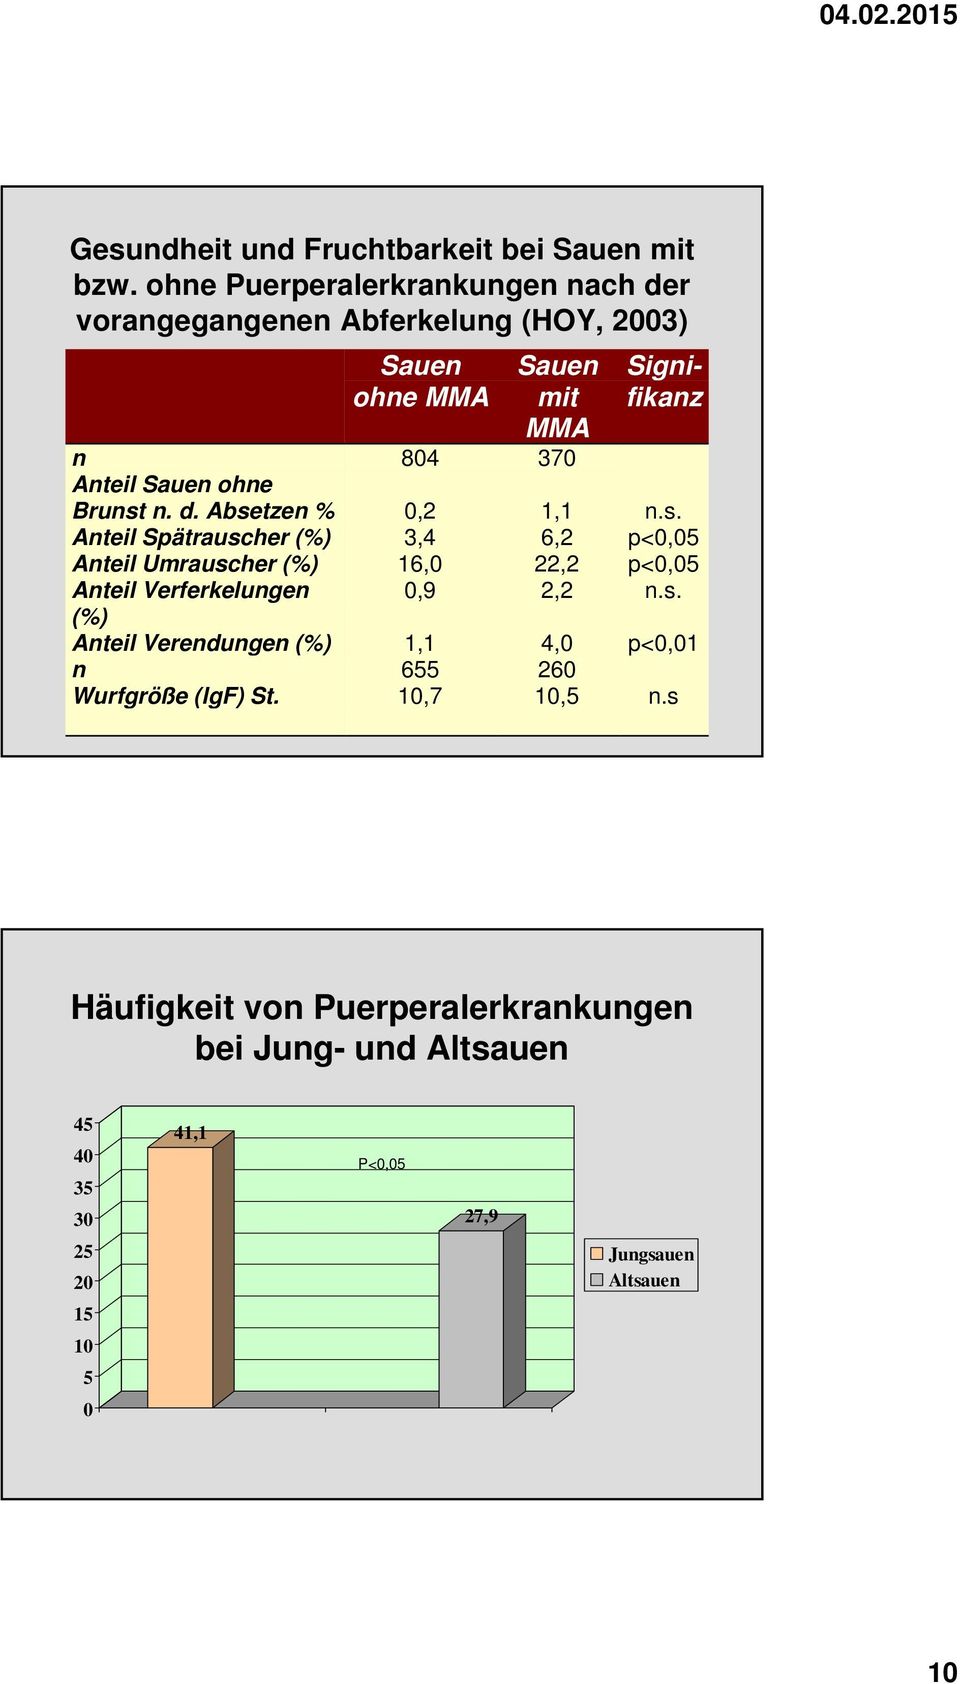 r vorangegangenen Abferkelung (HOY, 2003) n Anteil Sauen ohne Brunst n. d.